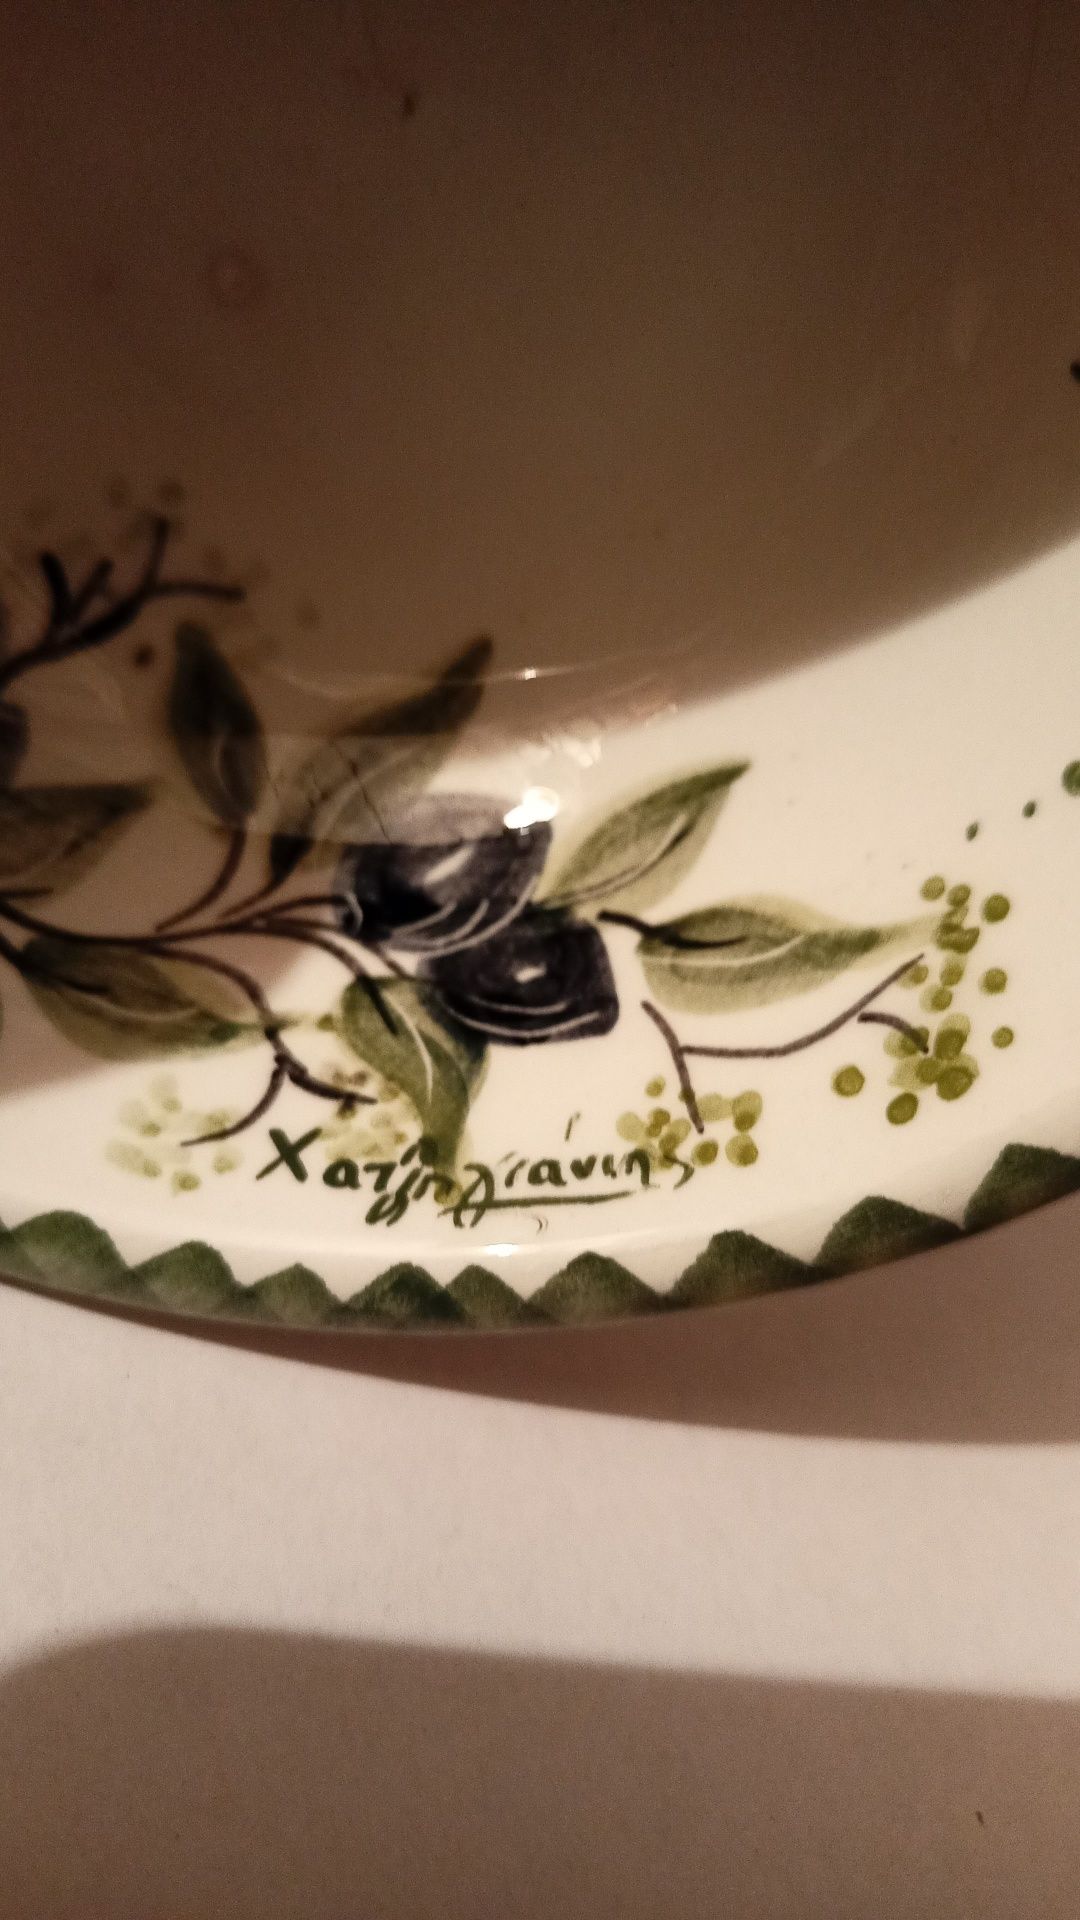 Miseczka malowana w gałązki z oliwkami.